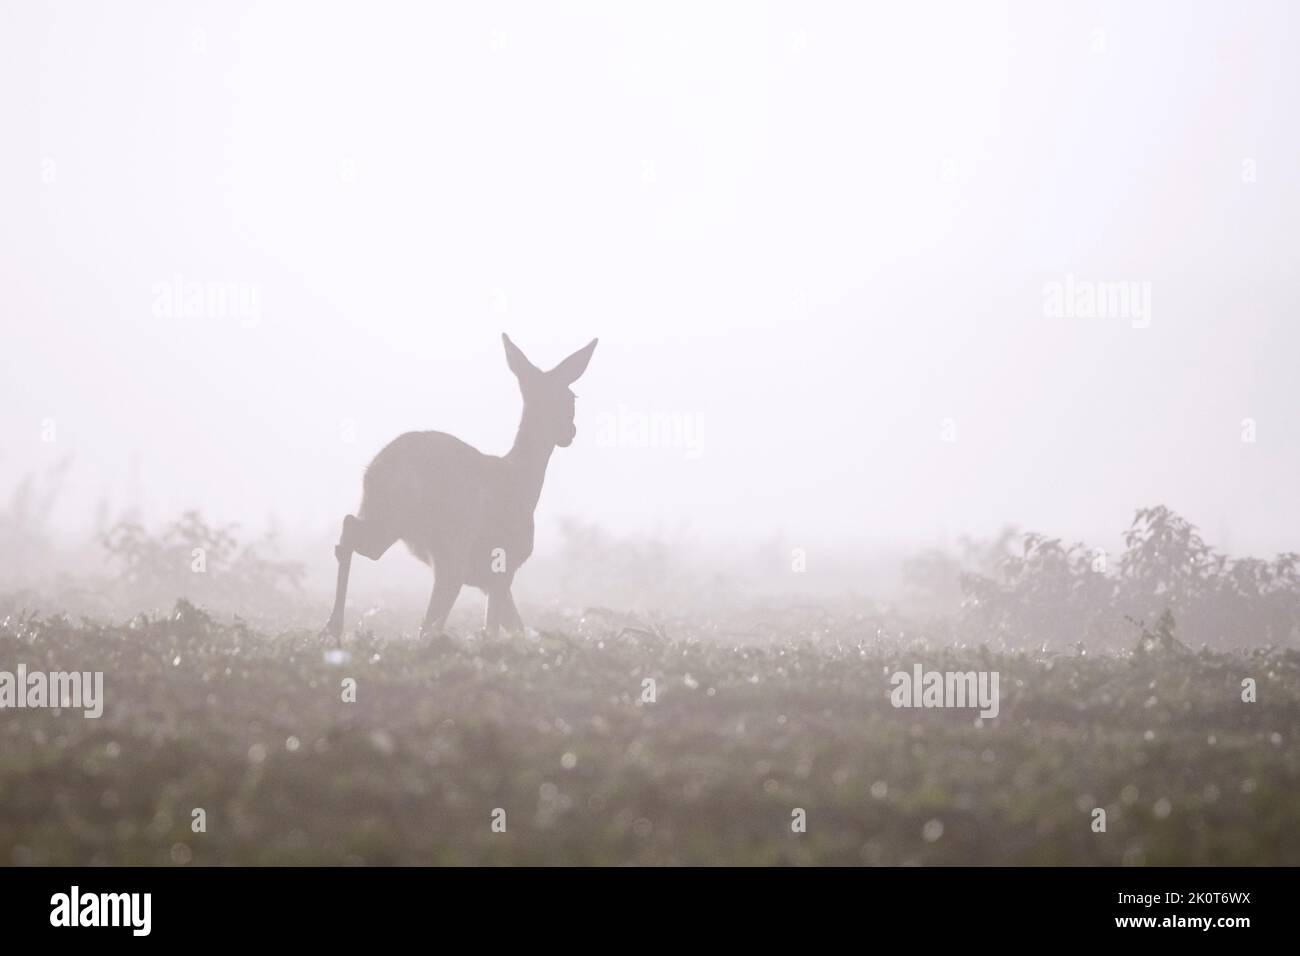 Corzo europeo (Capreolus capreolus) hembra / ciervo en prado / pradera cubierta de densa niebla a finales de verano / principios de otoño Foto de stock